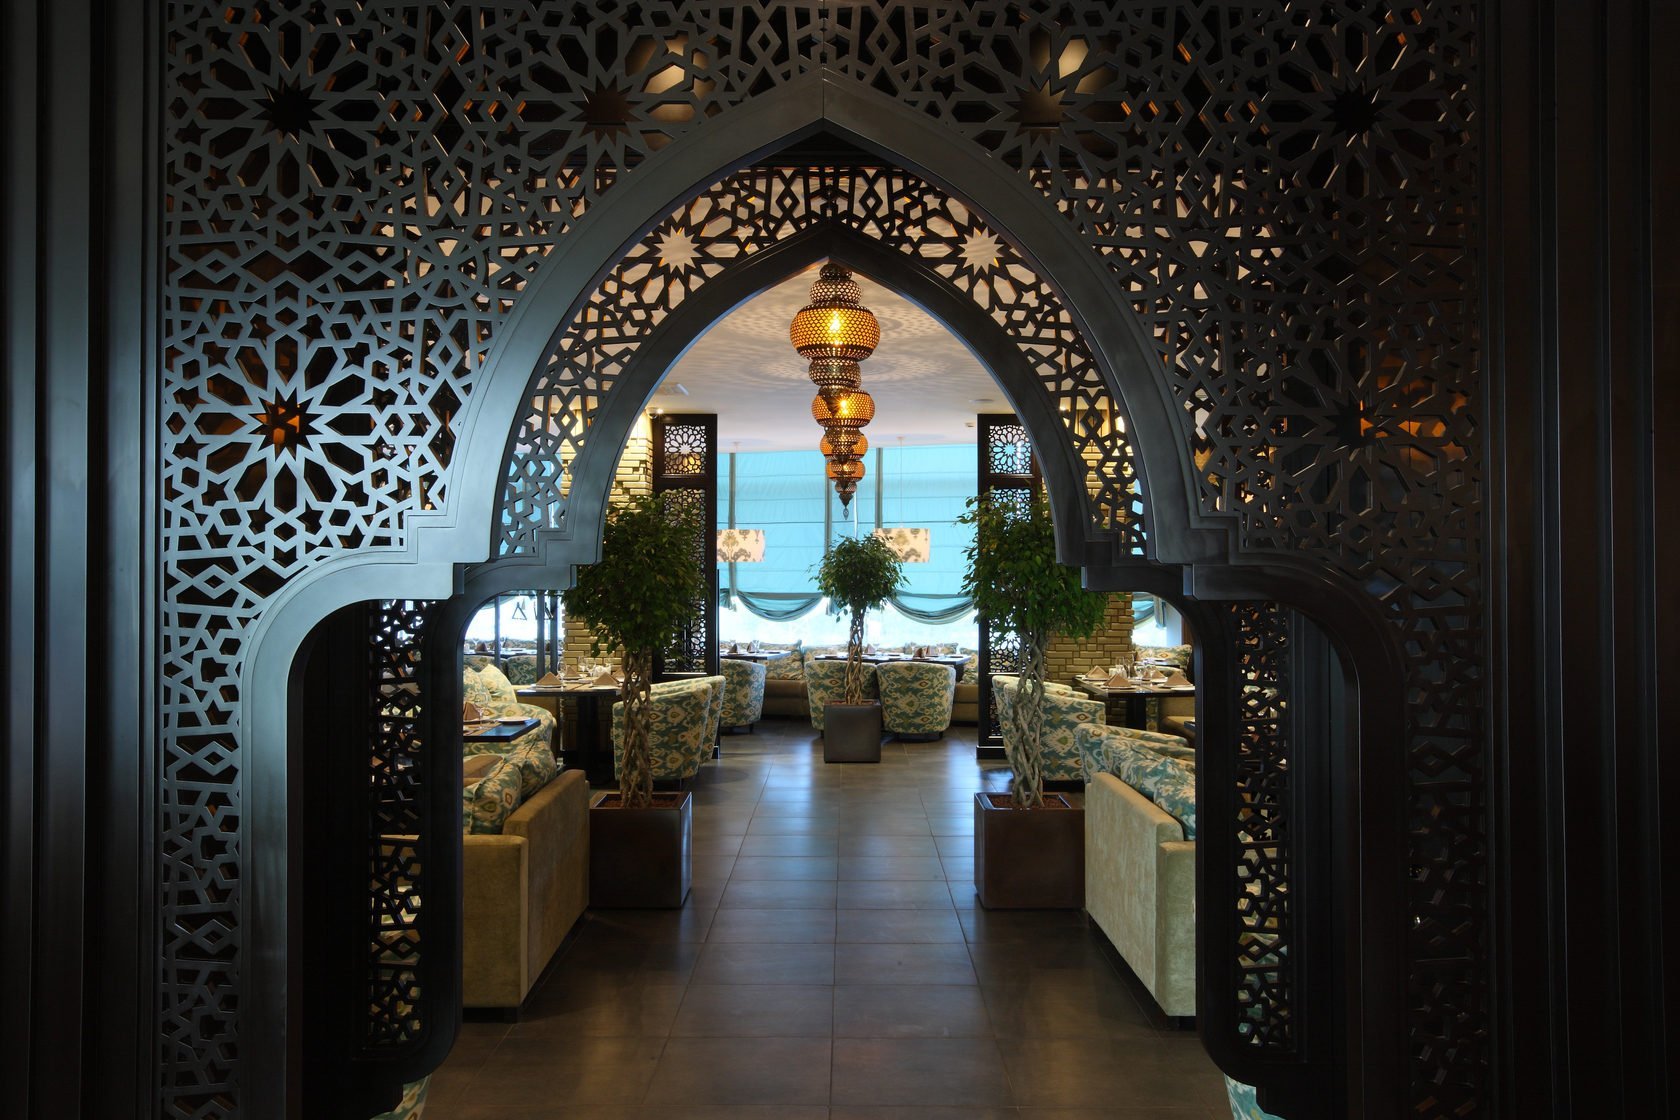 Великий стена узбек. Стрельчатые арки Восточный интерьер. Мавританская архитектура Марокко. Стиль Марокко в интерьере ресторана. Кафе в стиле Марокко.